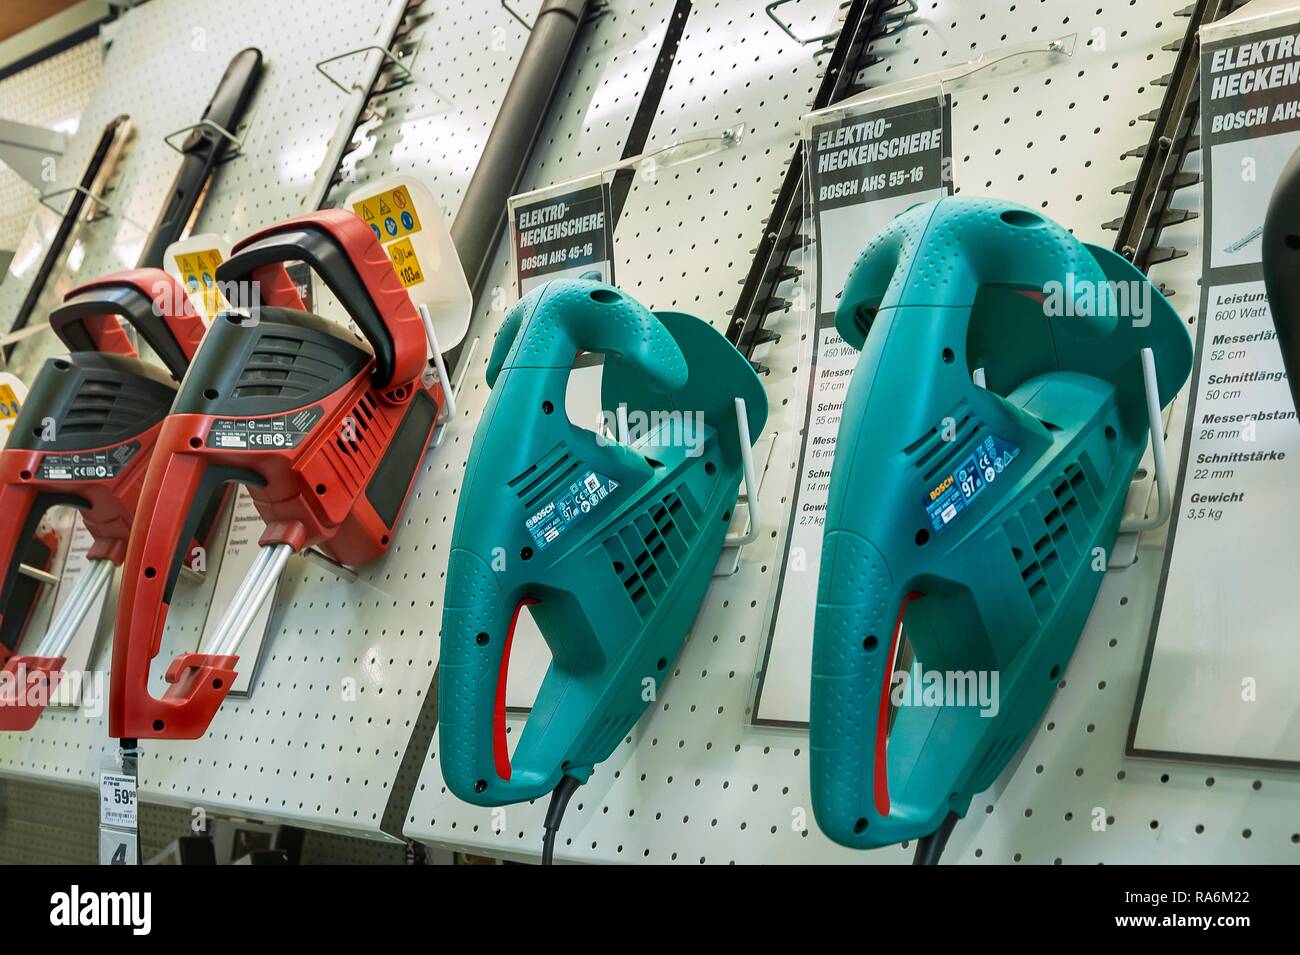 Electric tagliasiepi, negozio di ferramenta, Germania Foto Stock